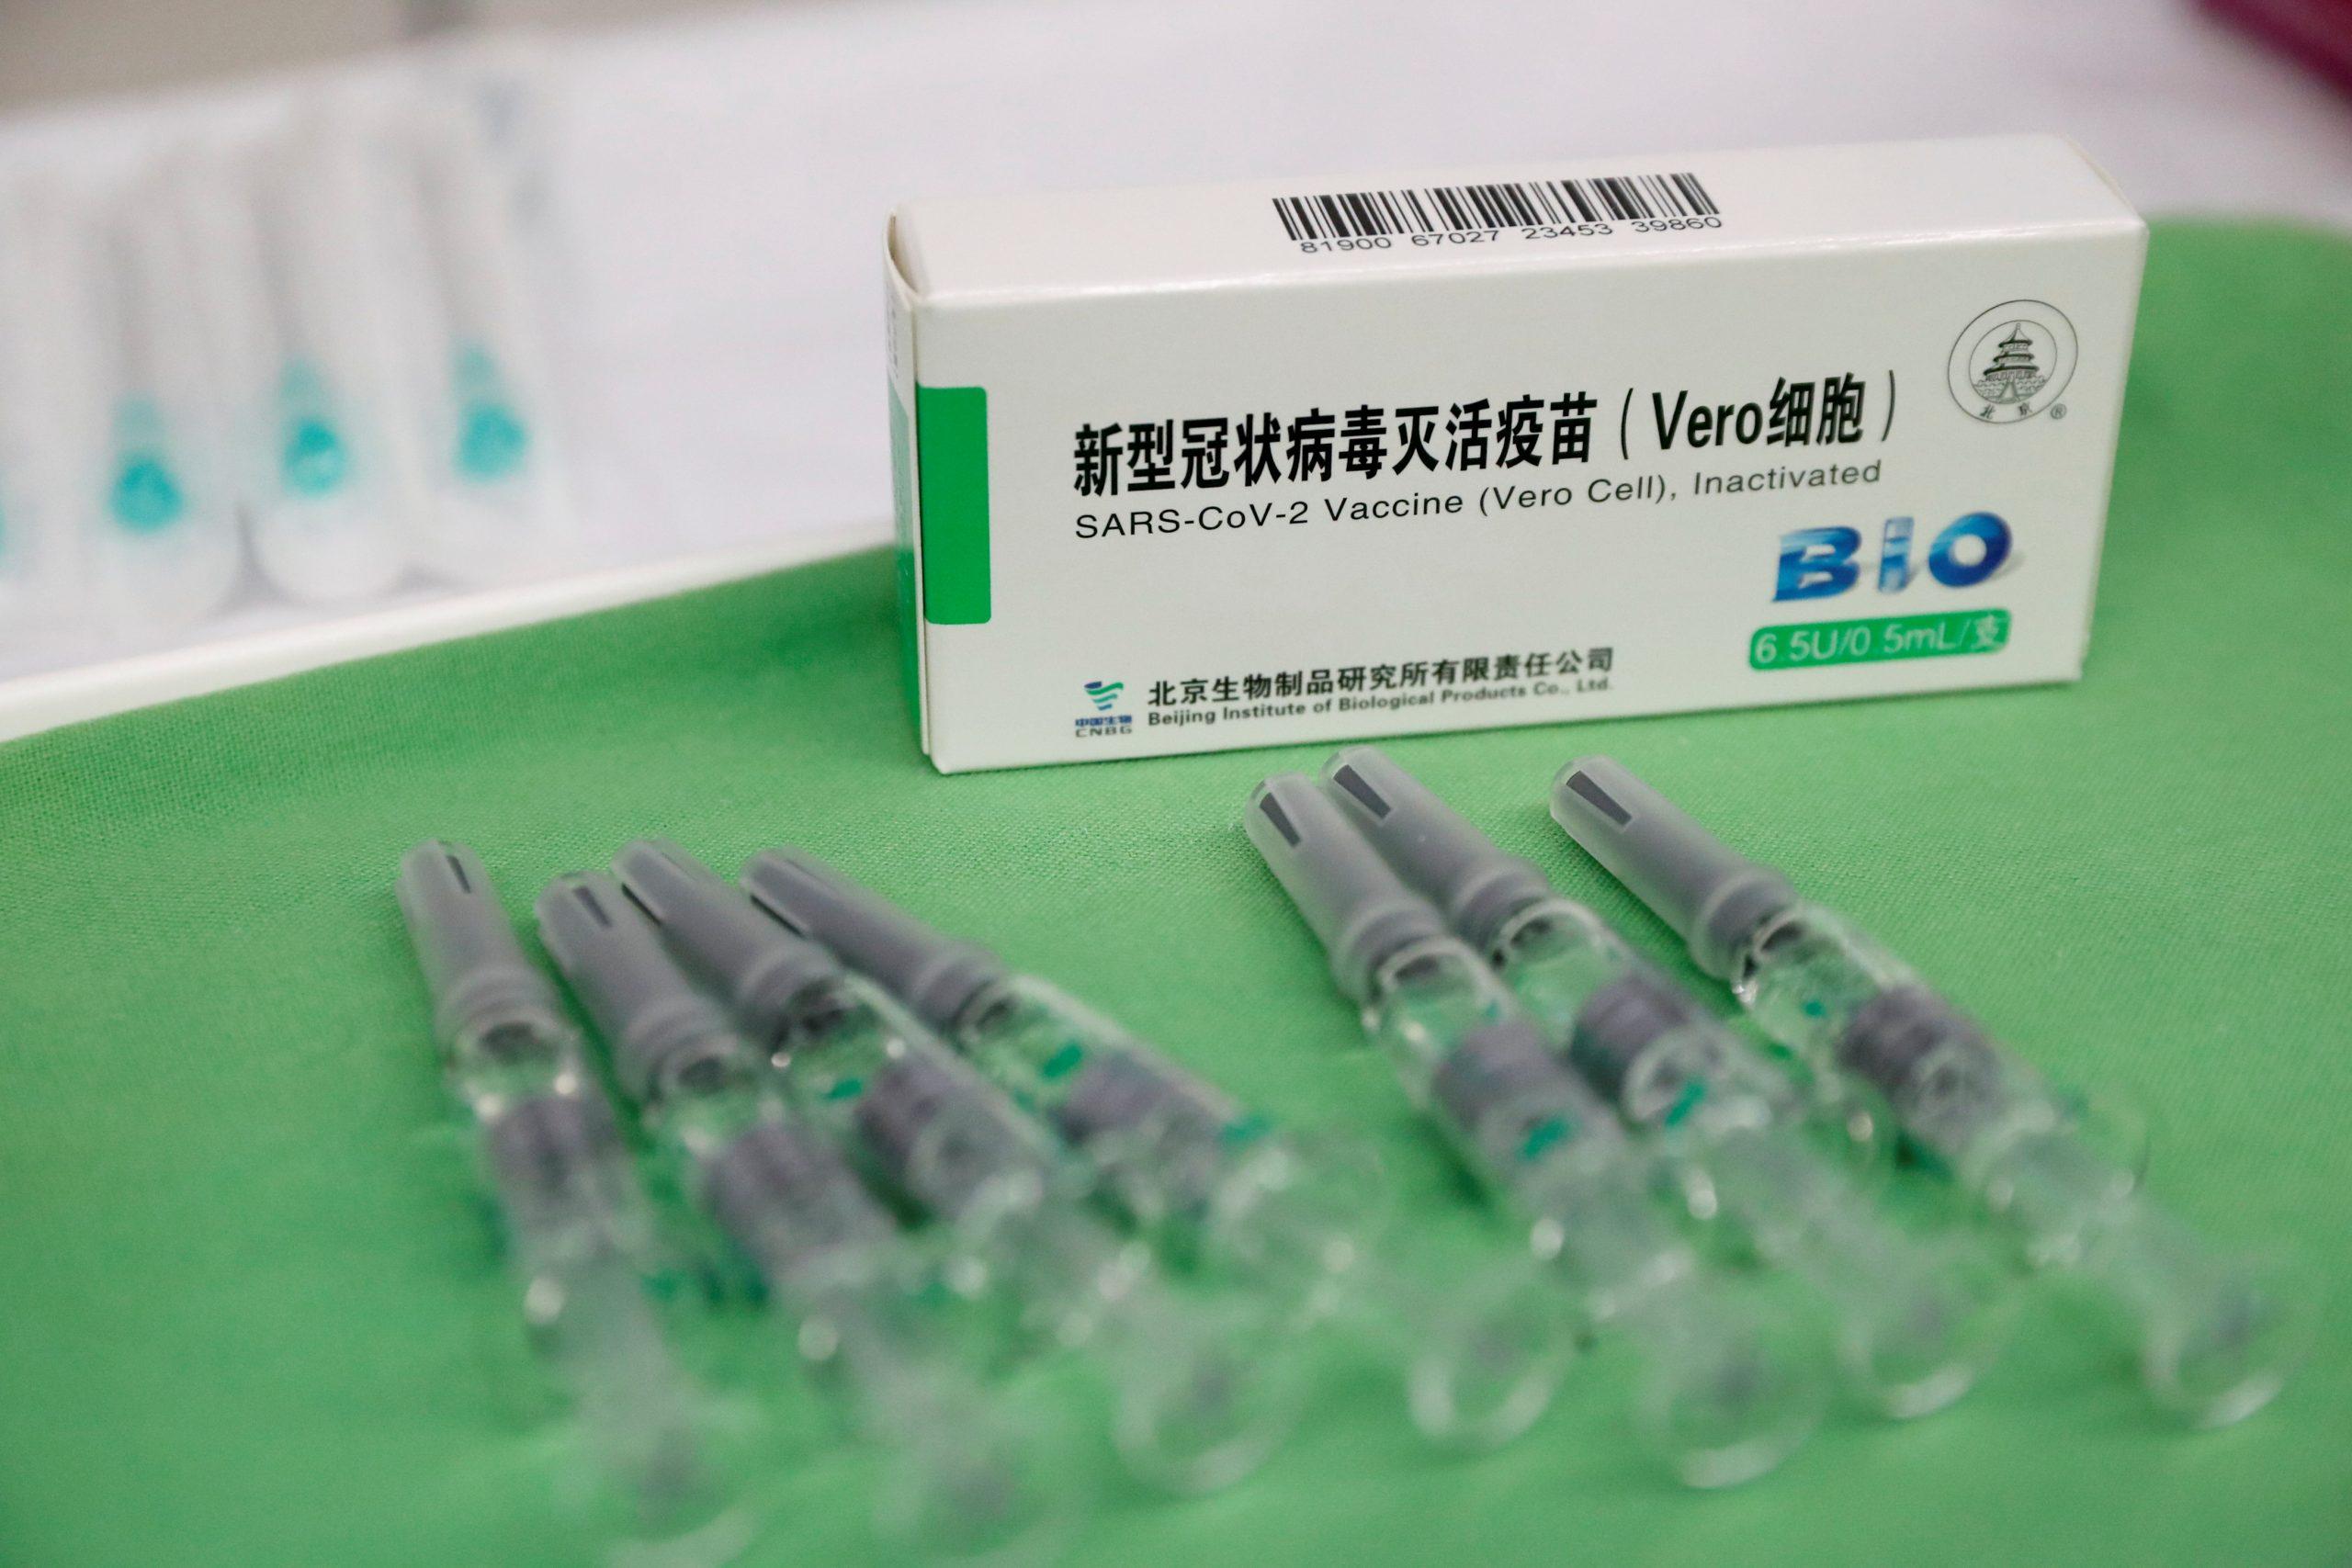 Vlada FBiH nabavlja 500.000 "Sinopharm" vakcina